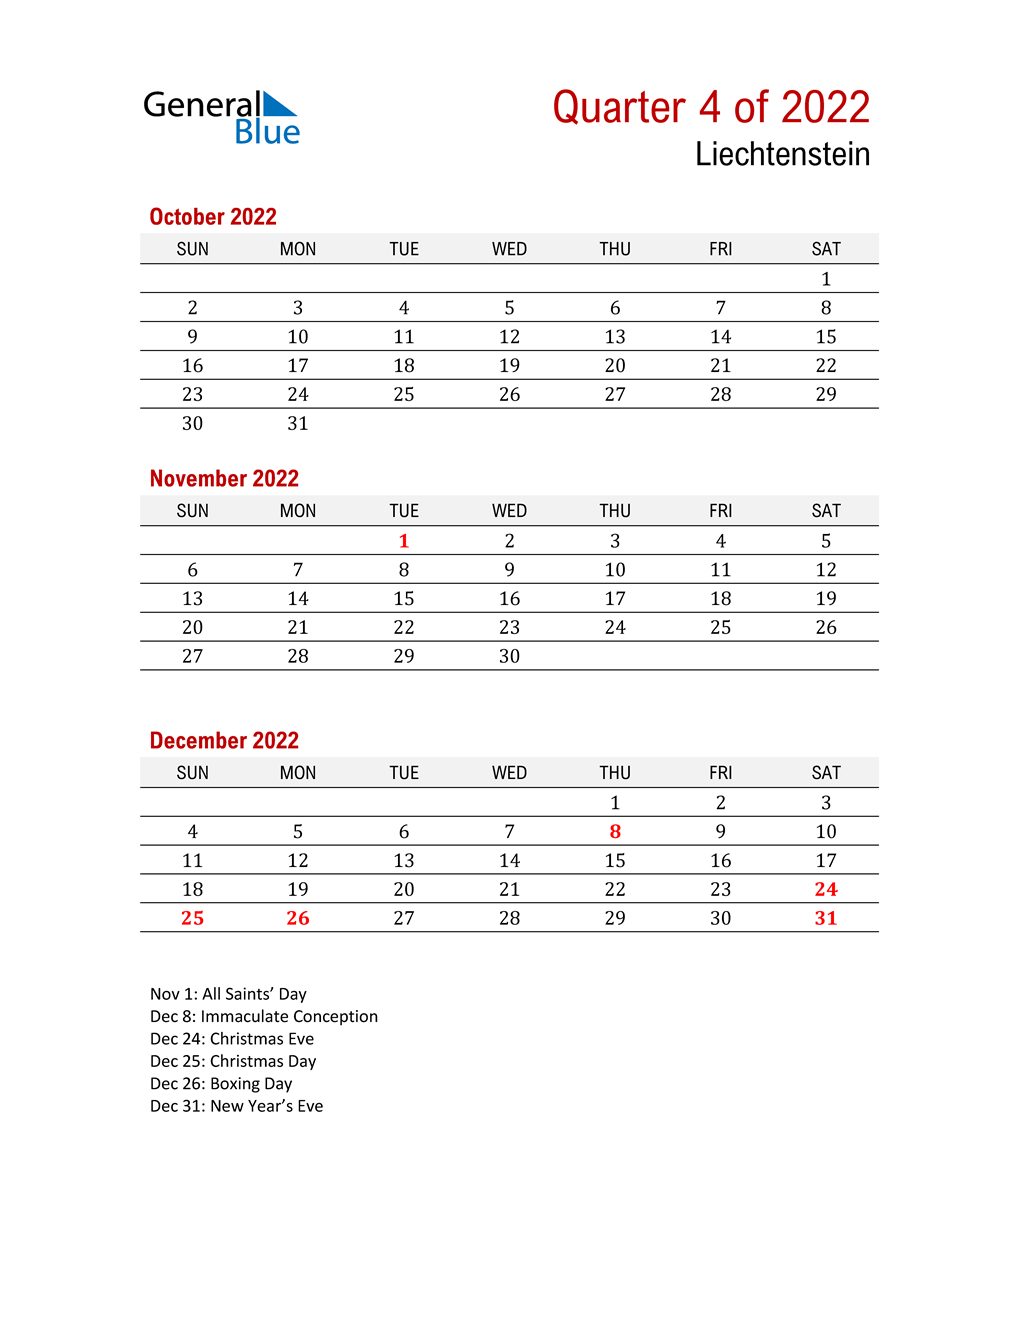  Printable Three Month Calendar for Liechtenstein